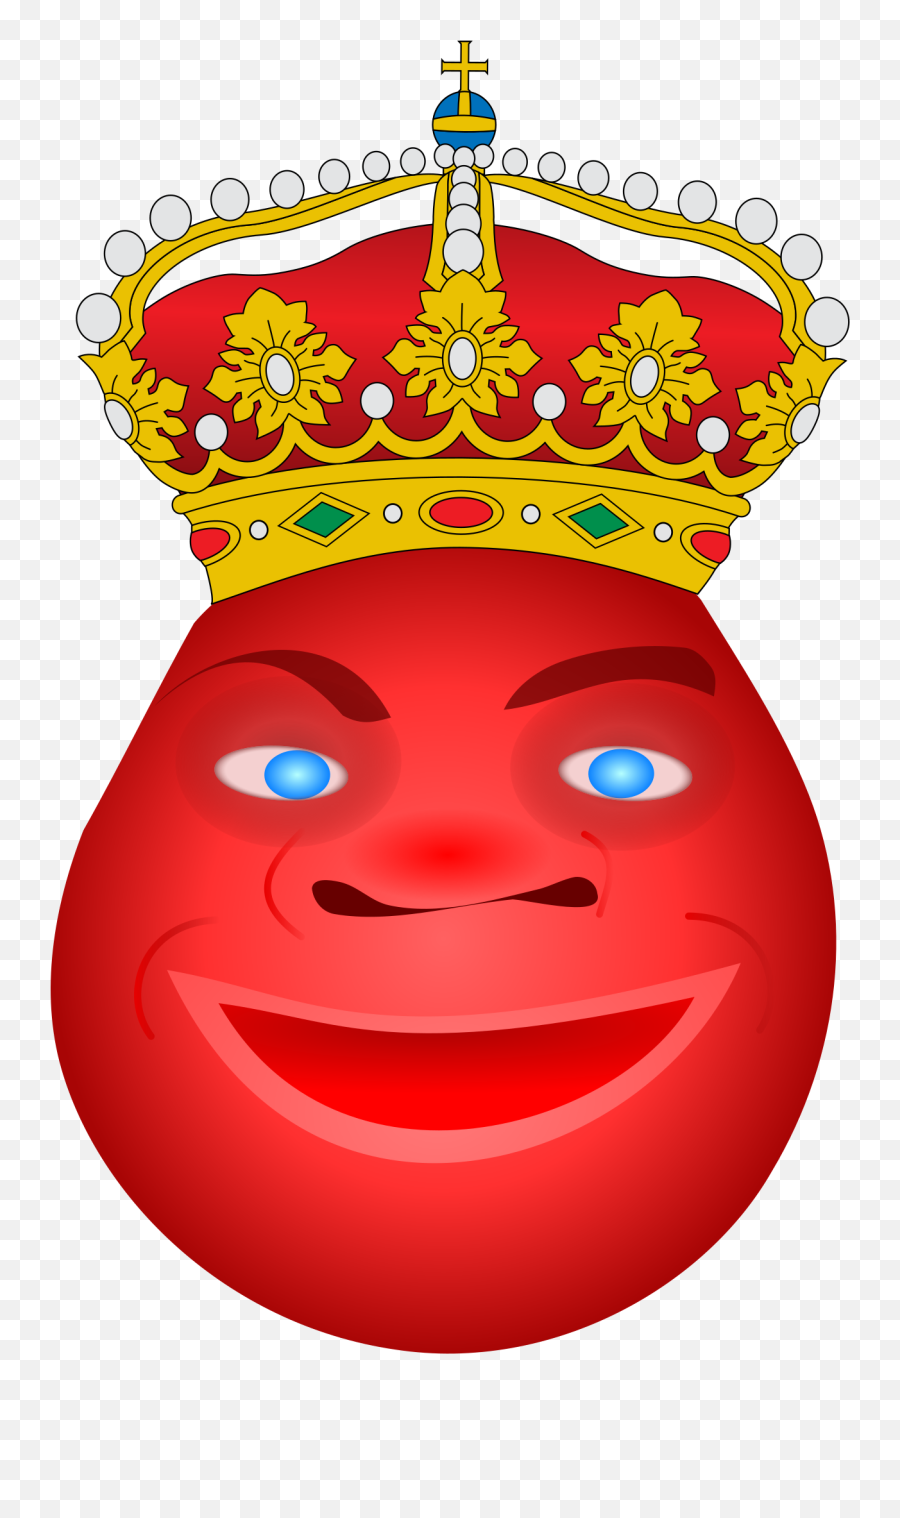 Filerey Momosvg - Wikimedia Commons Escudo De Tebar Emoji,20 Emojis Y Su Significado